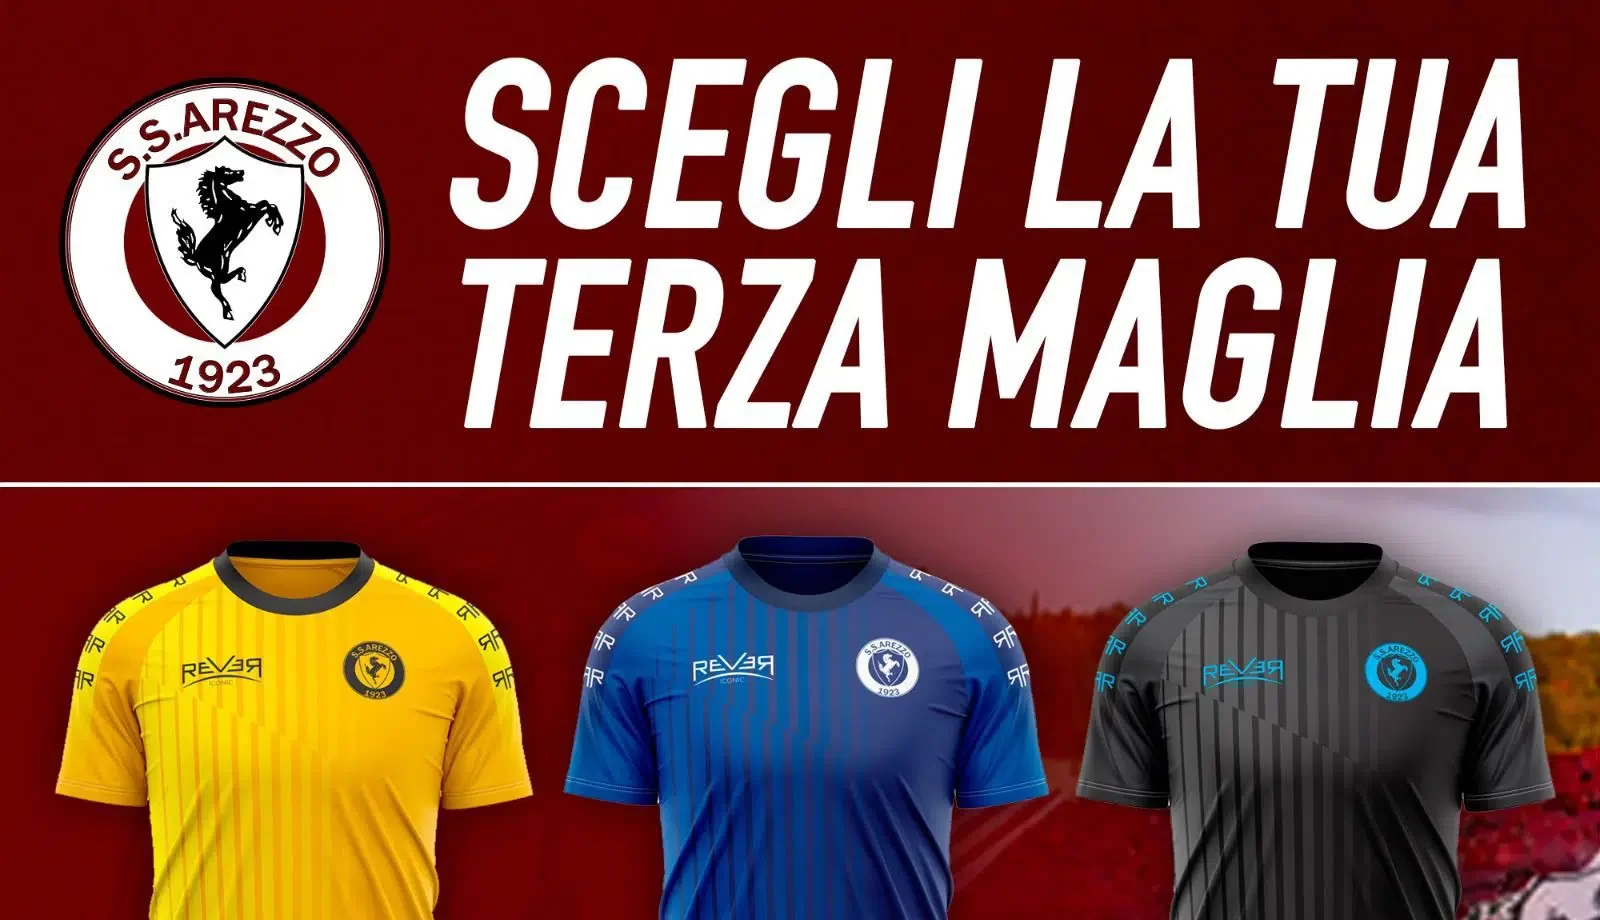 SS Arezzo: adesso i tifosi potranno scegliere la terza maglia della squadra